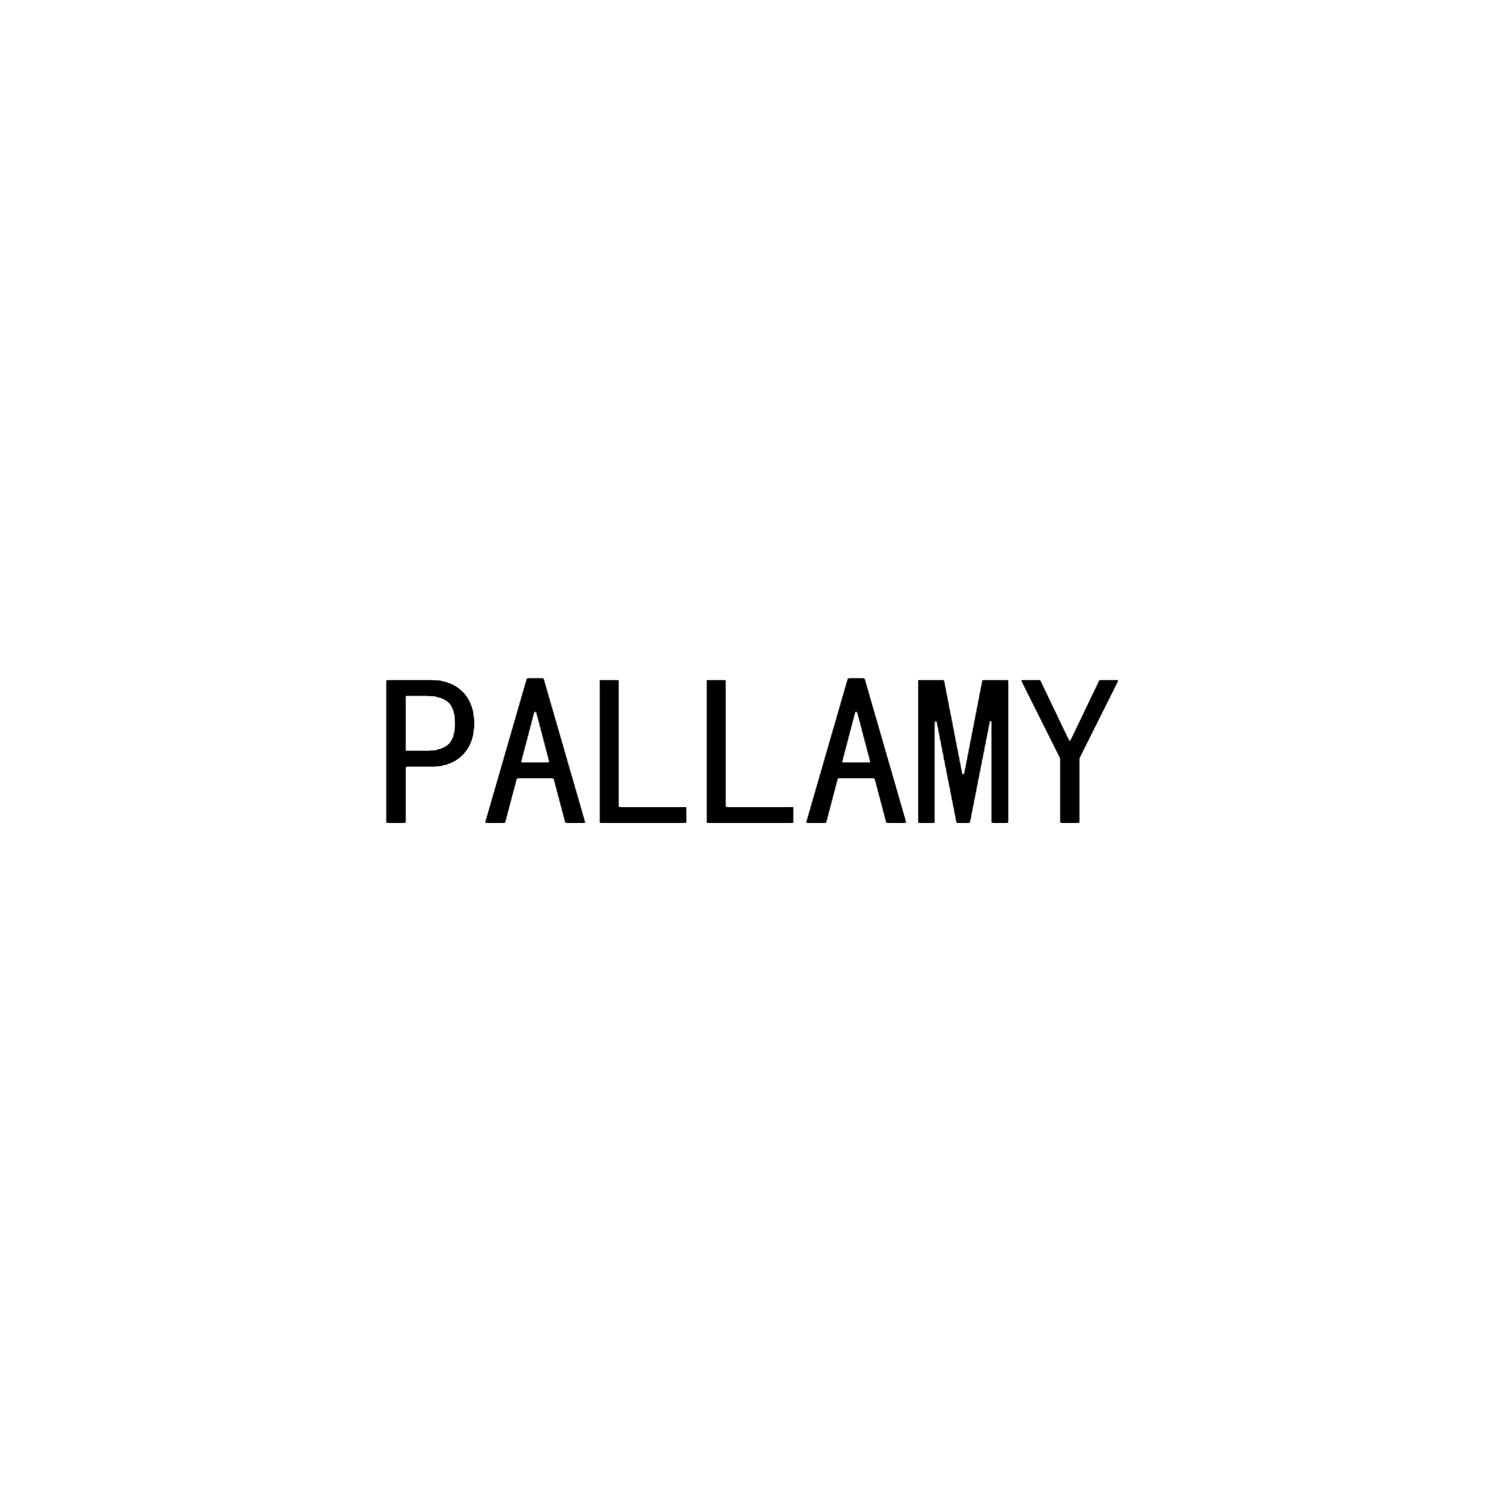 PALLAMY